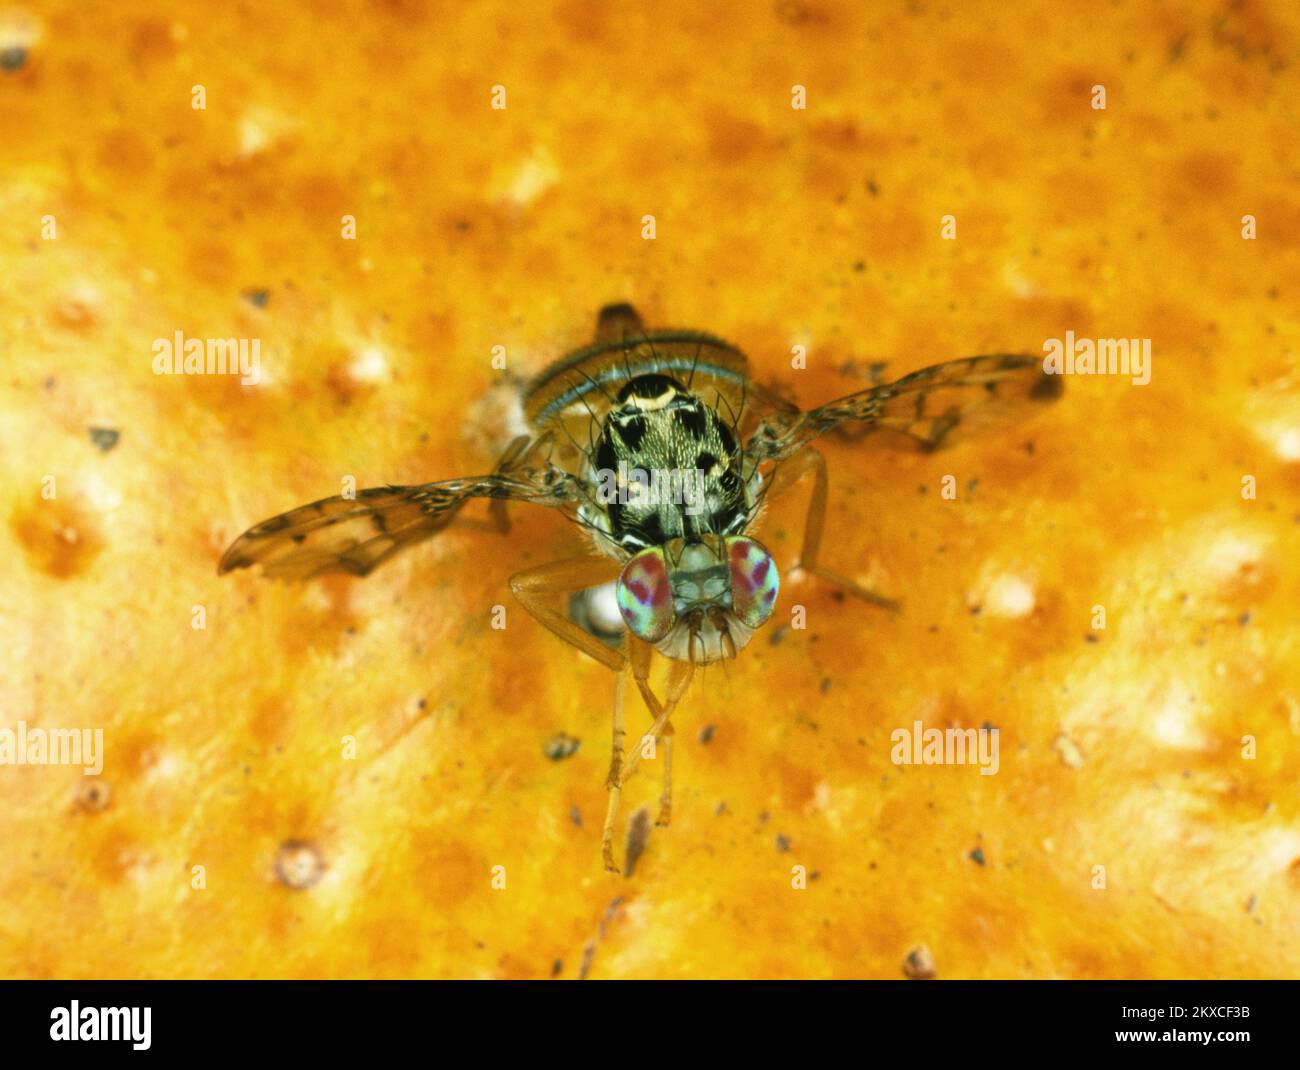 Mouche des fruits méditerranéenne (Ceratitis capitata) adulte mouche agrumes avec posture typique de l'aile sur les fruits orange, caractéristiques clairement marquées Banque D'Images